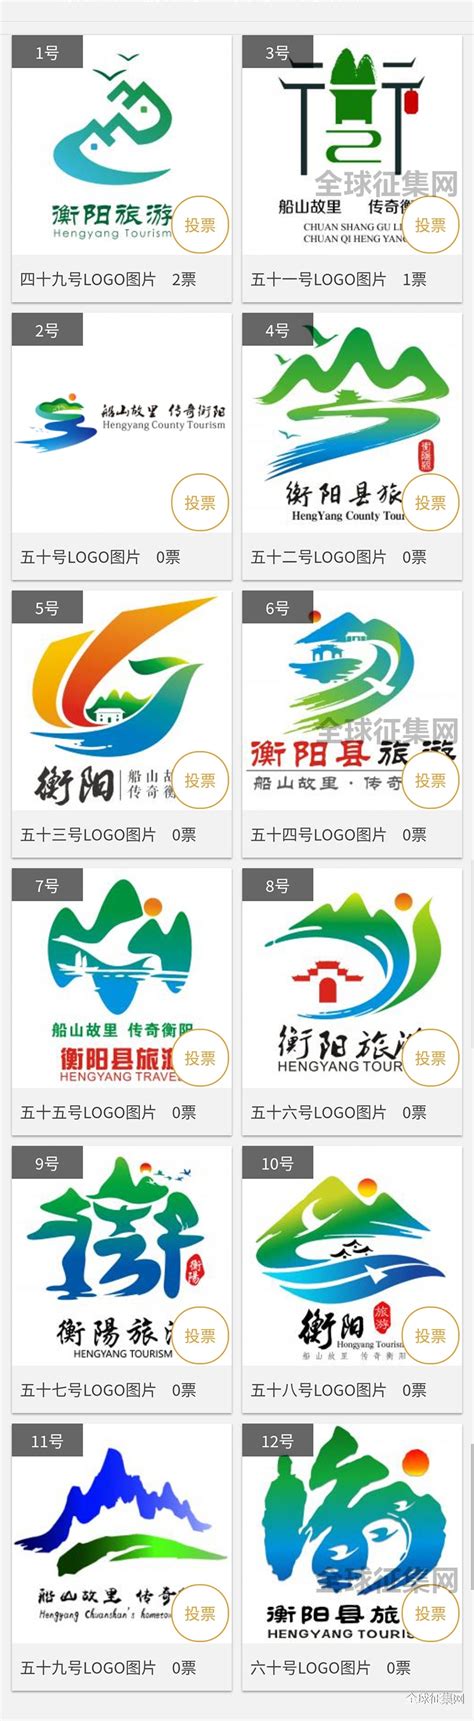 衡阳县旅游宣传标识评选结果公示-设计揭晓-设计大赛网